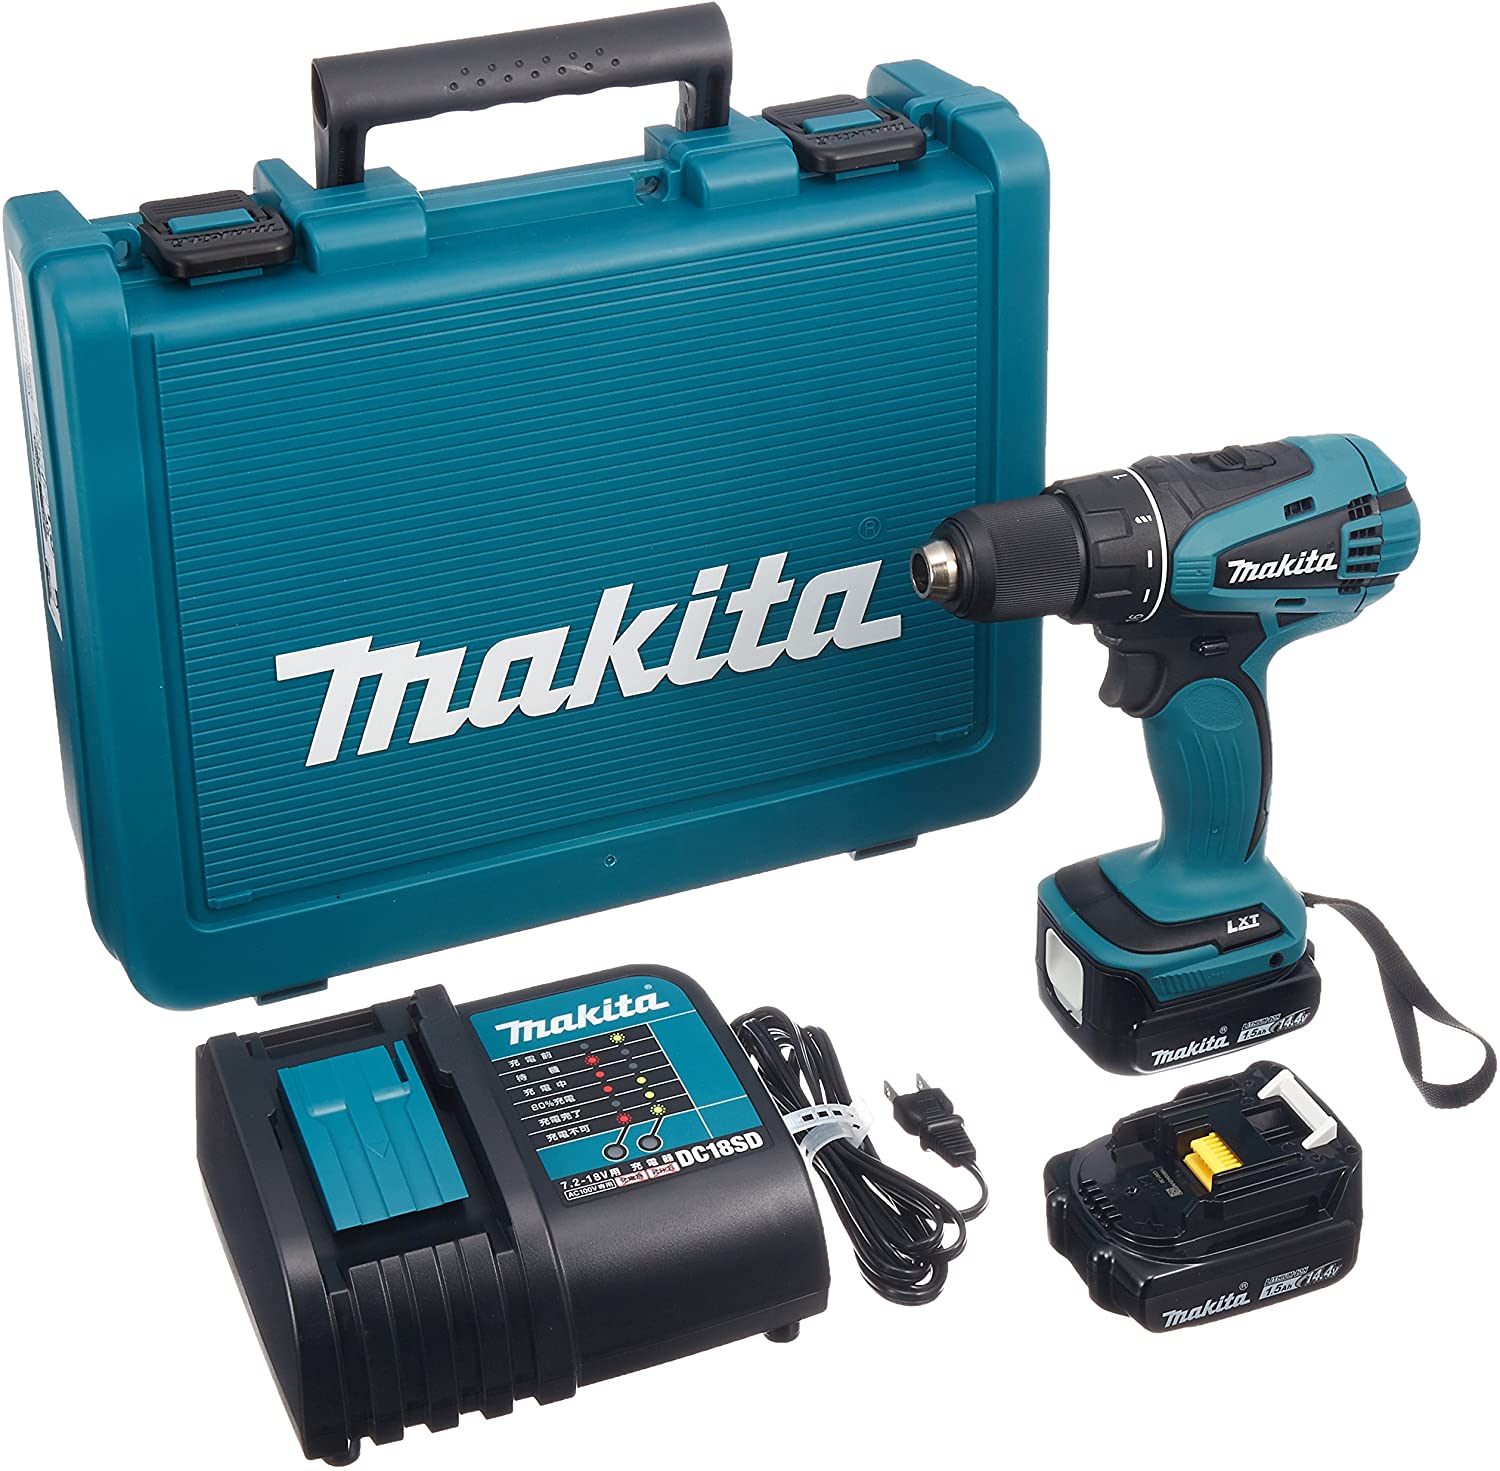 マキタ(makita) DF471DSHX 充電式ドライバドリル 14.4V 1.5Ah